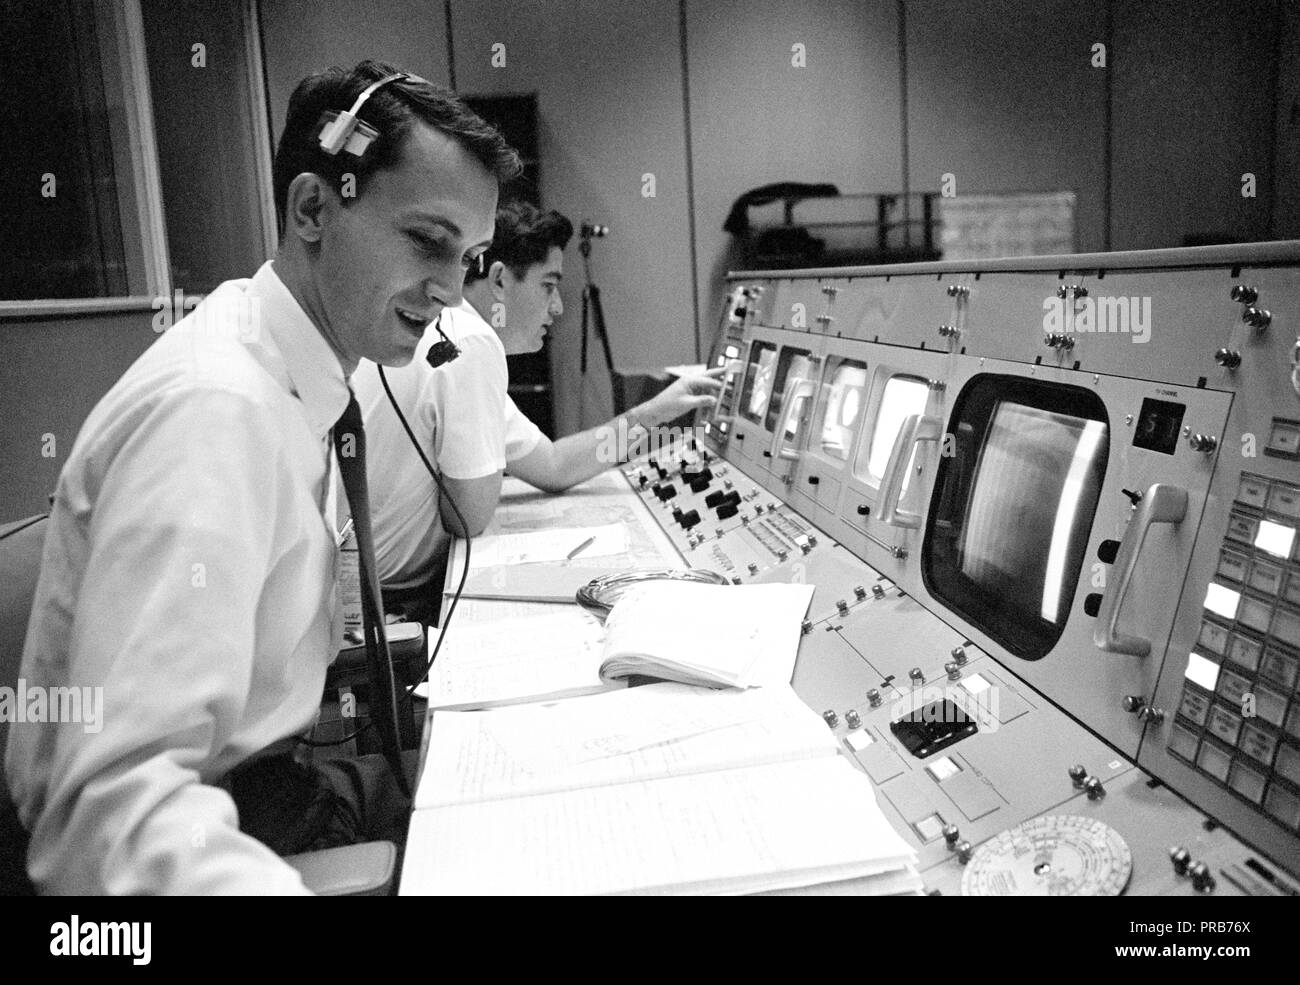 S68-50684 (octobre 1968) --- Bureau des affaires publiques (OAP) commentateur Douglas K. Ward est photographié à sa console dans la salle de contrôle des opérations de Mission (MOCR) dans le centre de contrôle de mission au Centre spatial Johnson de la NASA pendant le vol d'Apollo 7. Crédit photo : NASA Banque D'Images